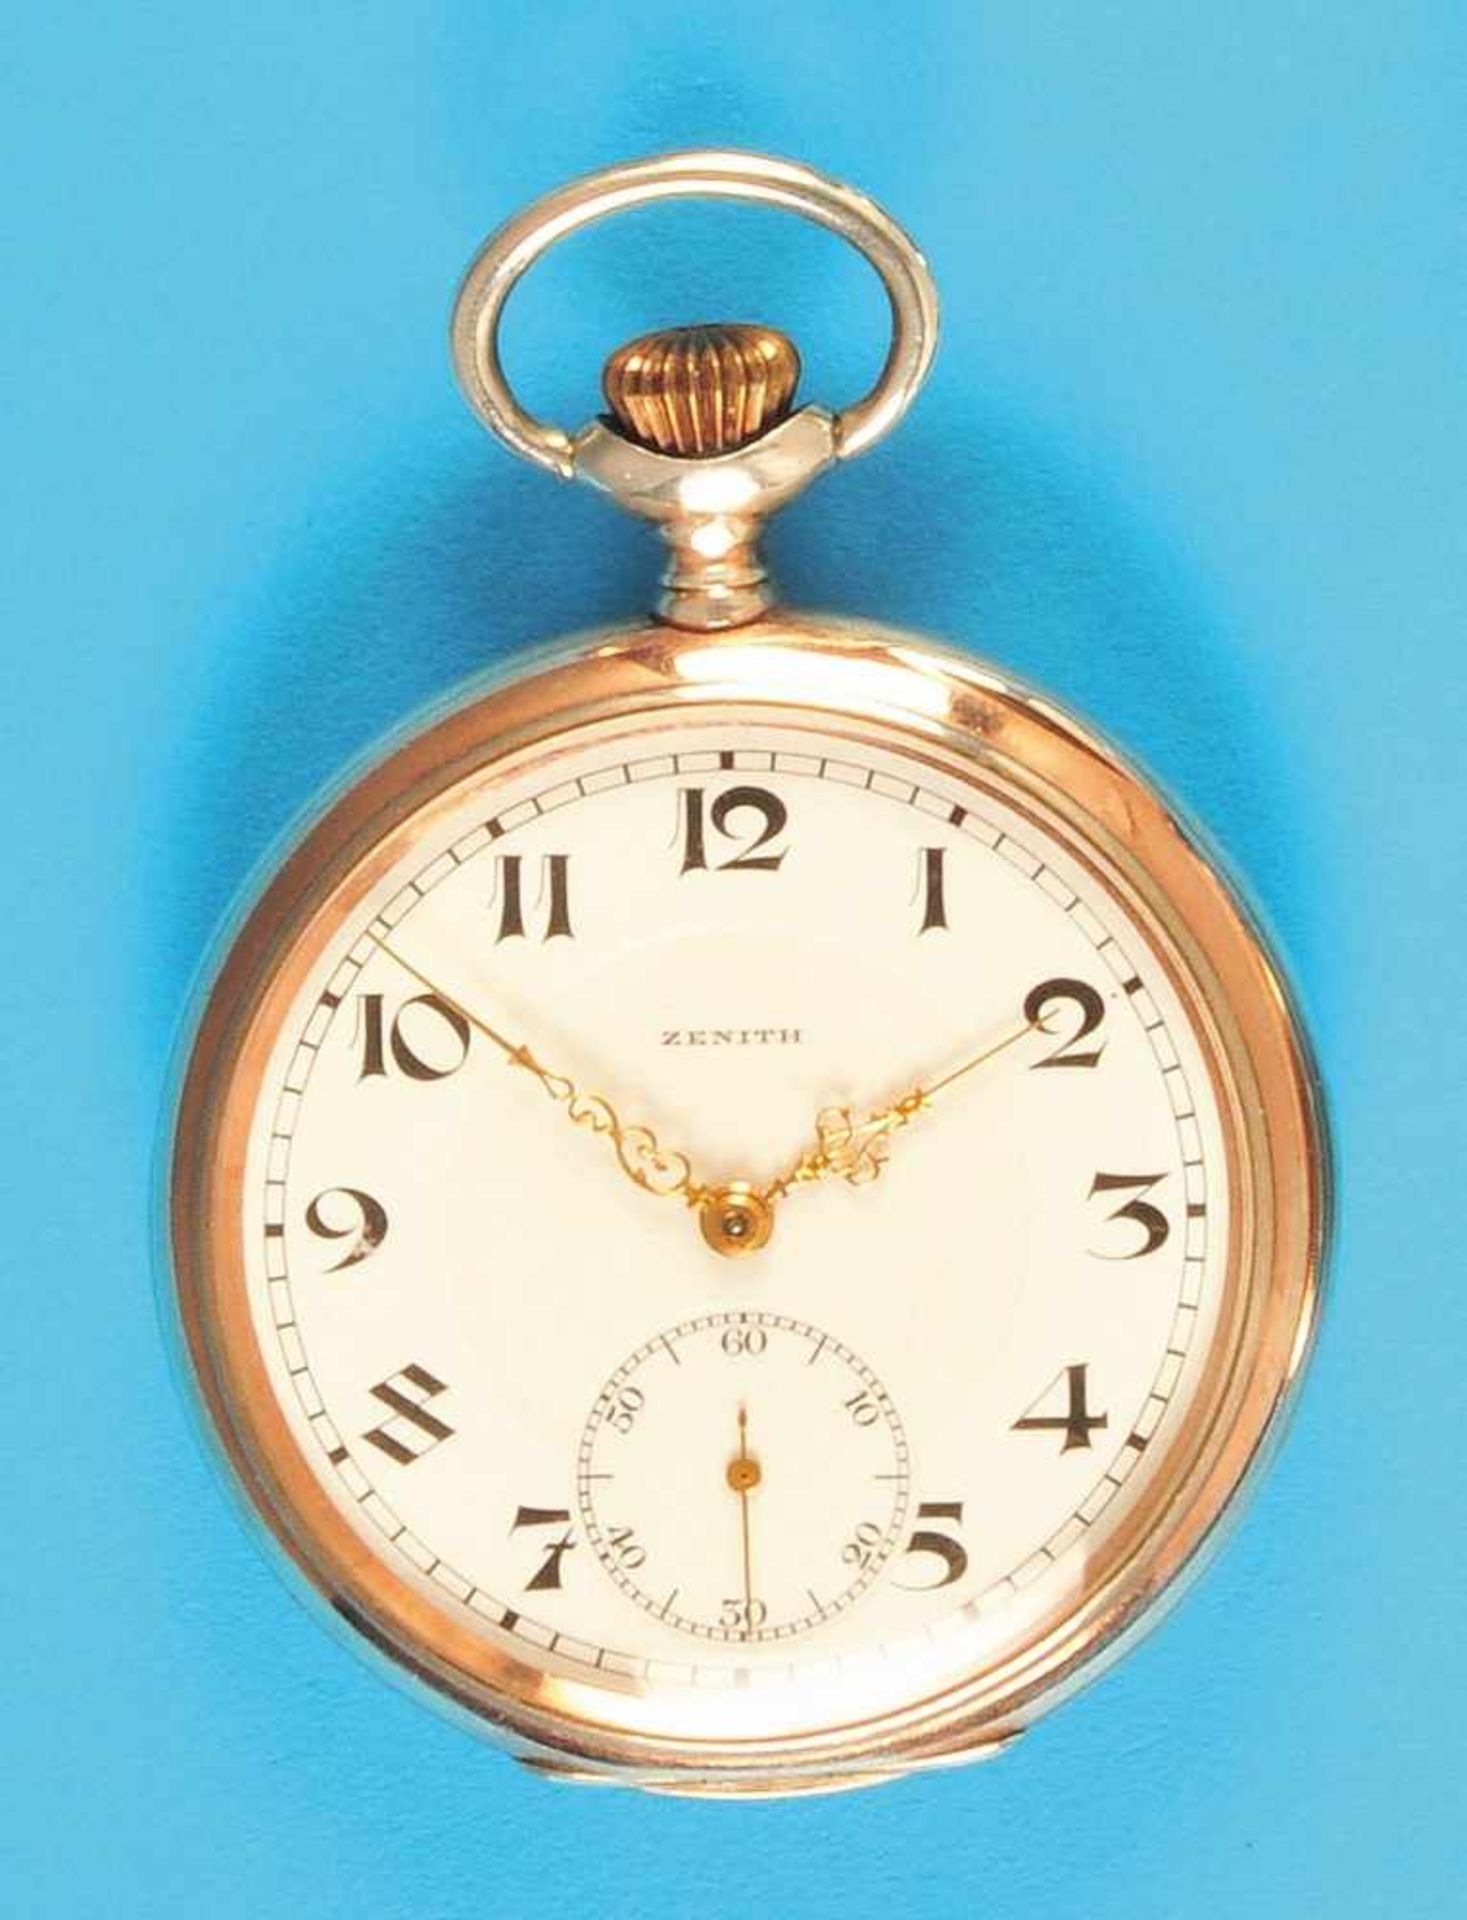 Zenith silver pocket watchZenith Silbertaschenuhr, glattes Gehäuse, Emailzifferblatt mit - Bild 2 aus 2